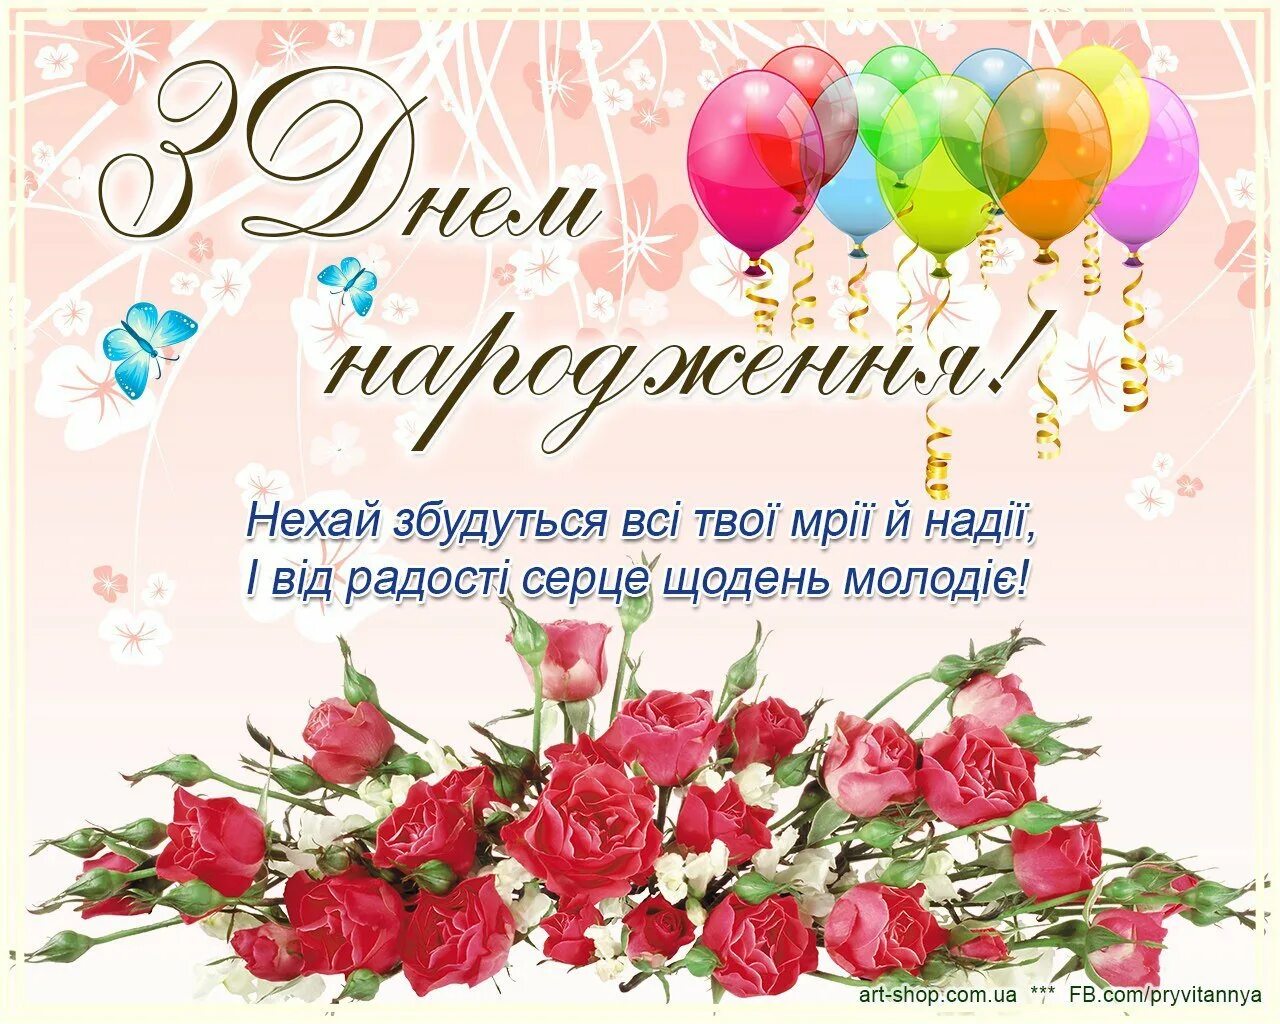 Поздравления с днём рождения на украинском языке. Поздравления с днём рождения на украинском языке открытки. Поздравления с днём рождения женщине на украинском языке. Поздравленя с днём рождения на украинском языке. Поздравить с днем рождения на украинском